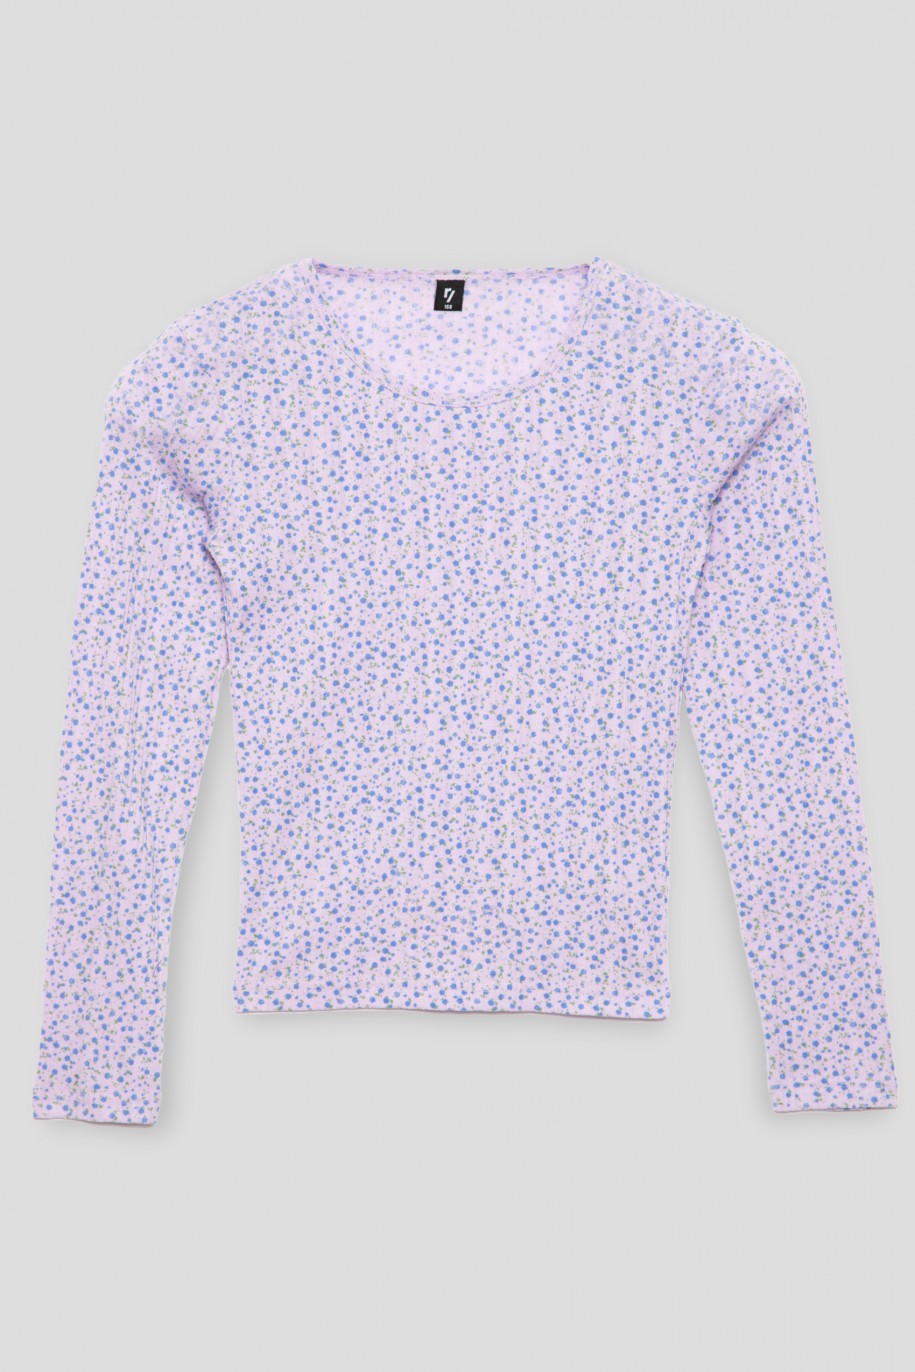 Fioletowa bluzka z długim rękawem z wzorem w kwiaty dla dziewczyny - 41682